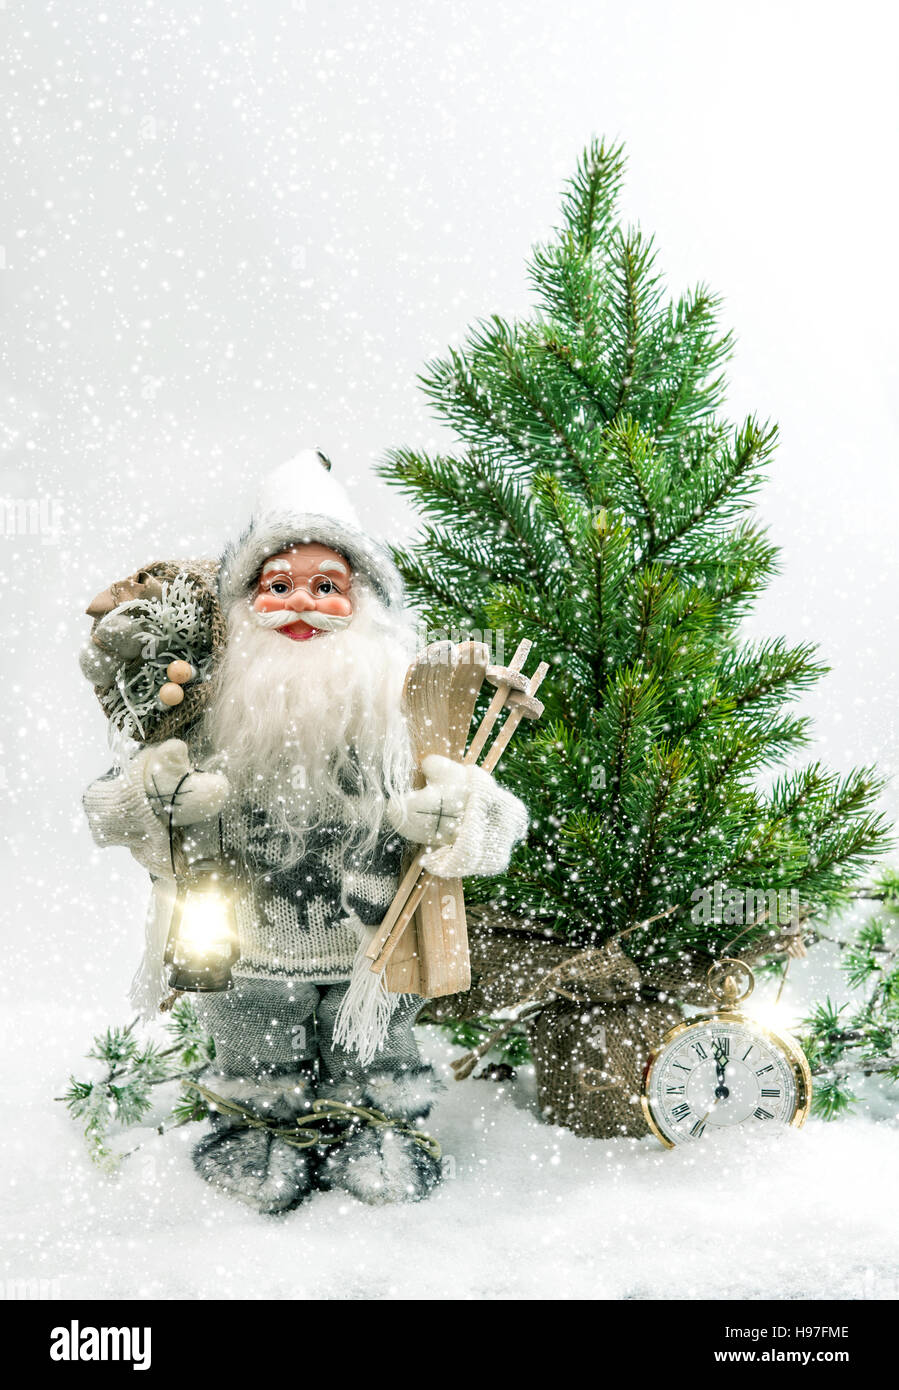 Santa Claus mit Weihnachtsbaum und Geschenke im Schnee. Winter Urlaub Dekoration Stockfoto